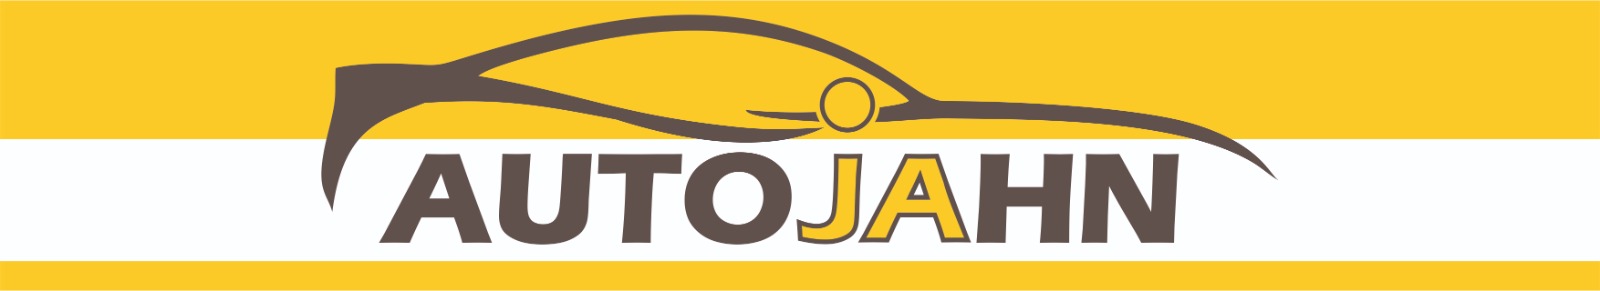 Automobile_Jahn : Brand Short Description Type Here.